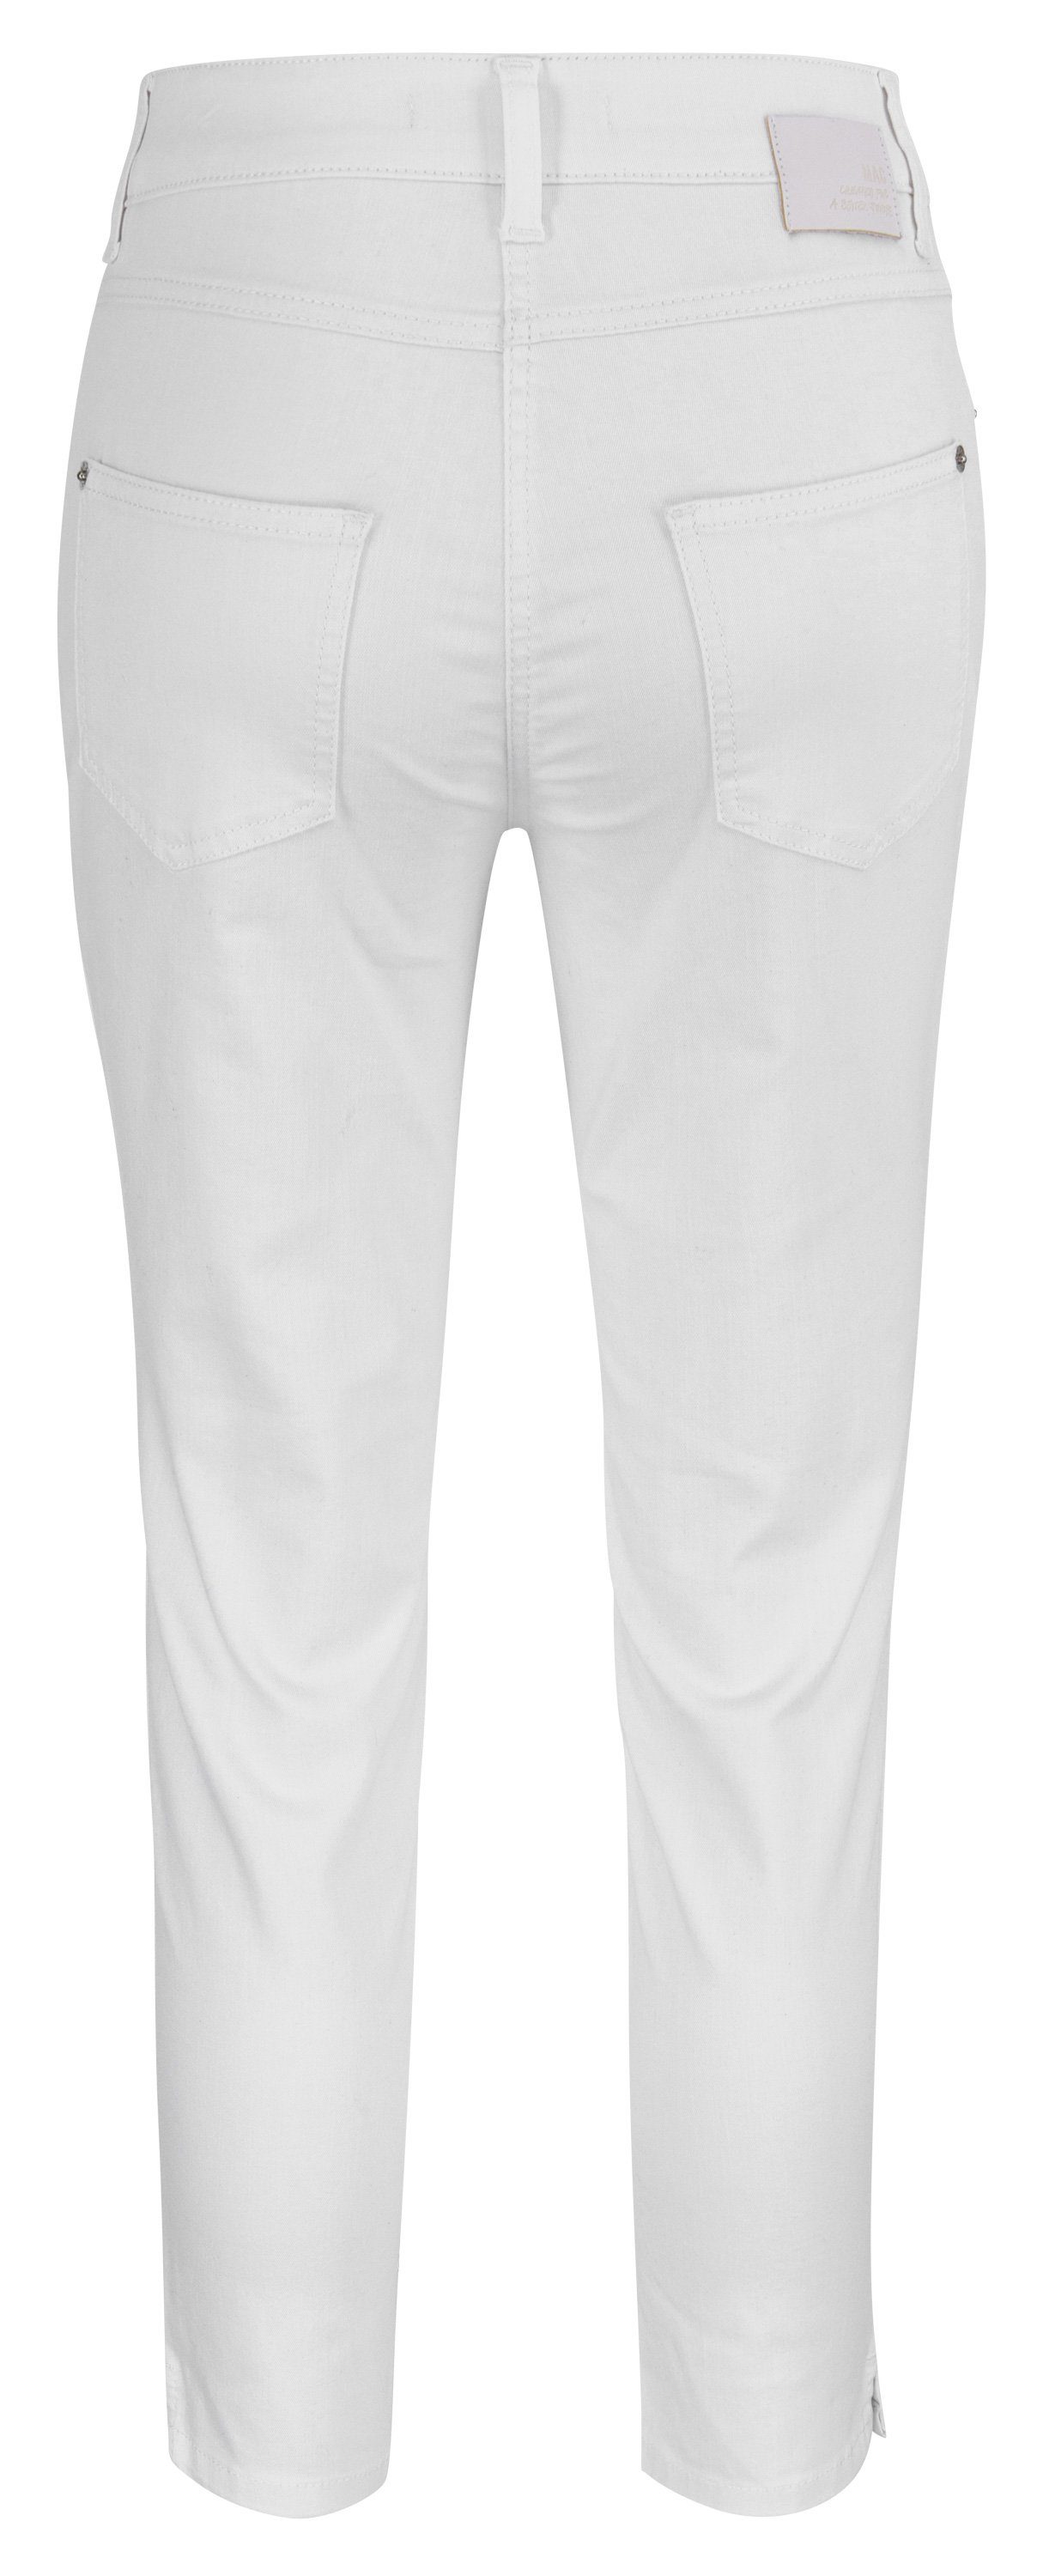 denim SUMMER MELANIE all MAC 7/8 D010 5045-90-0391L MAC Stretch-Jeans white